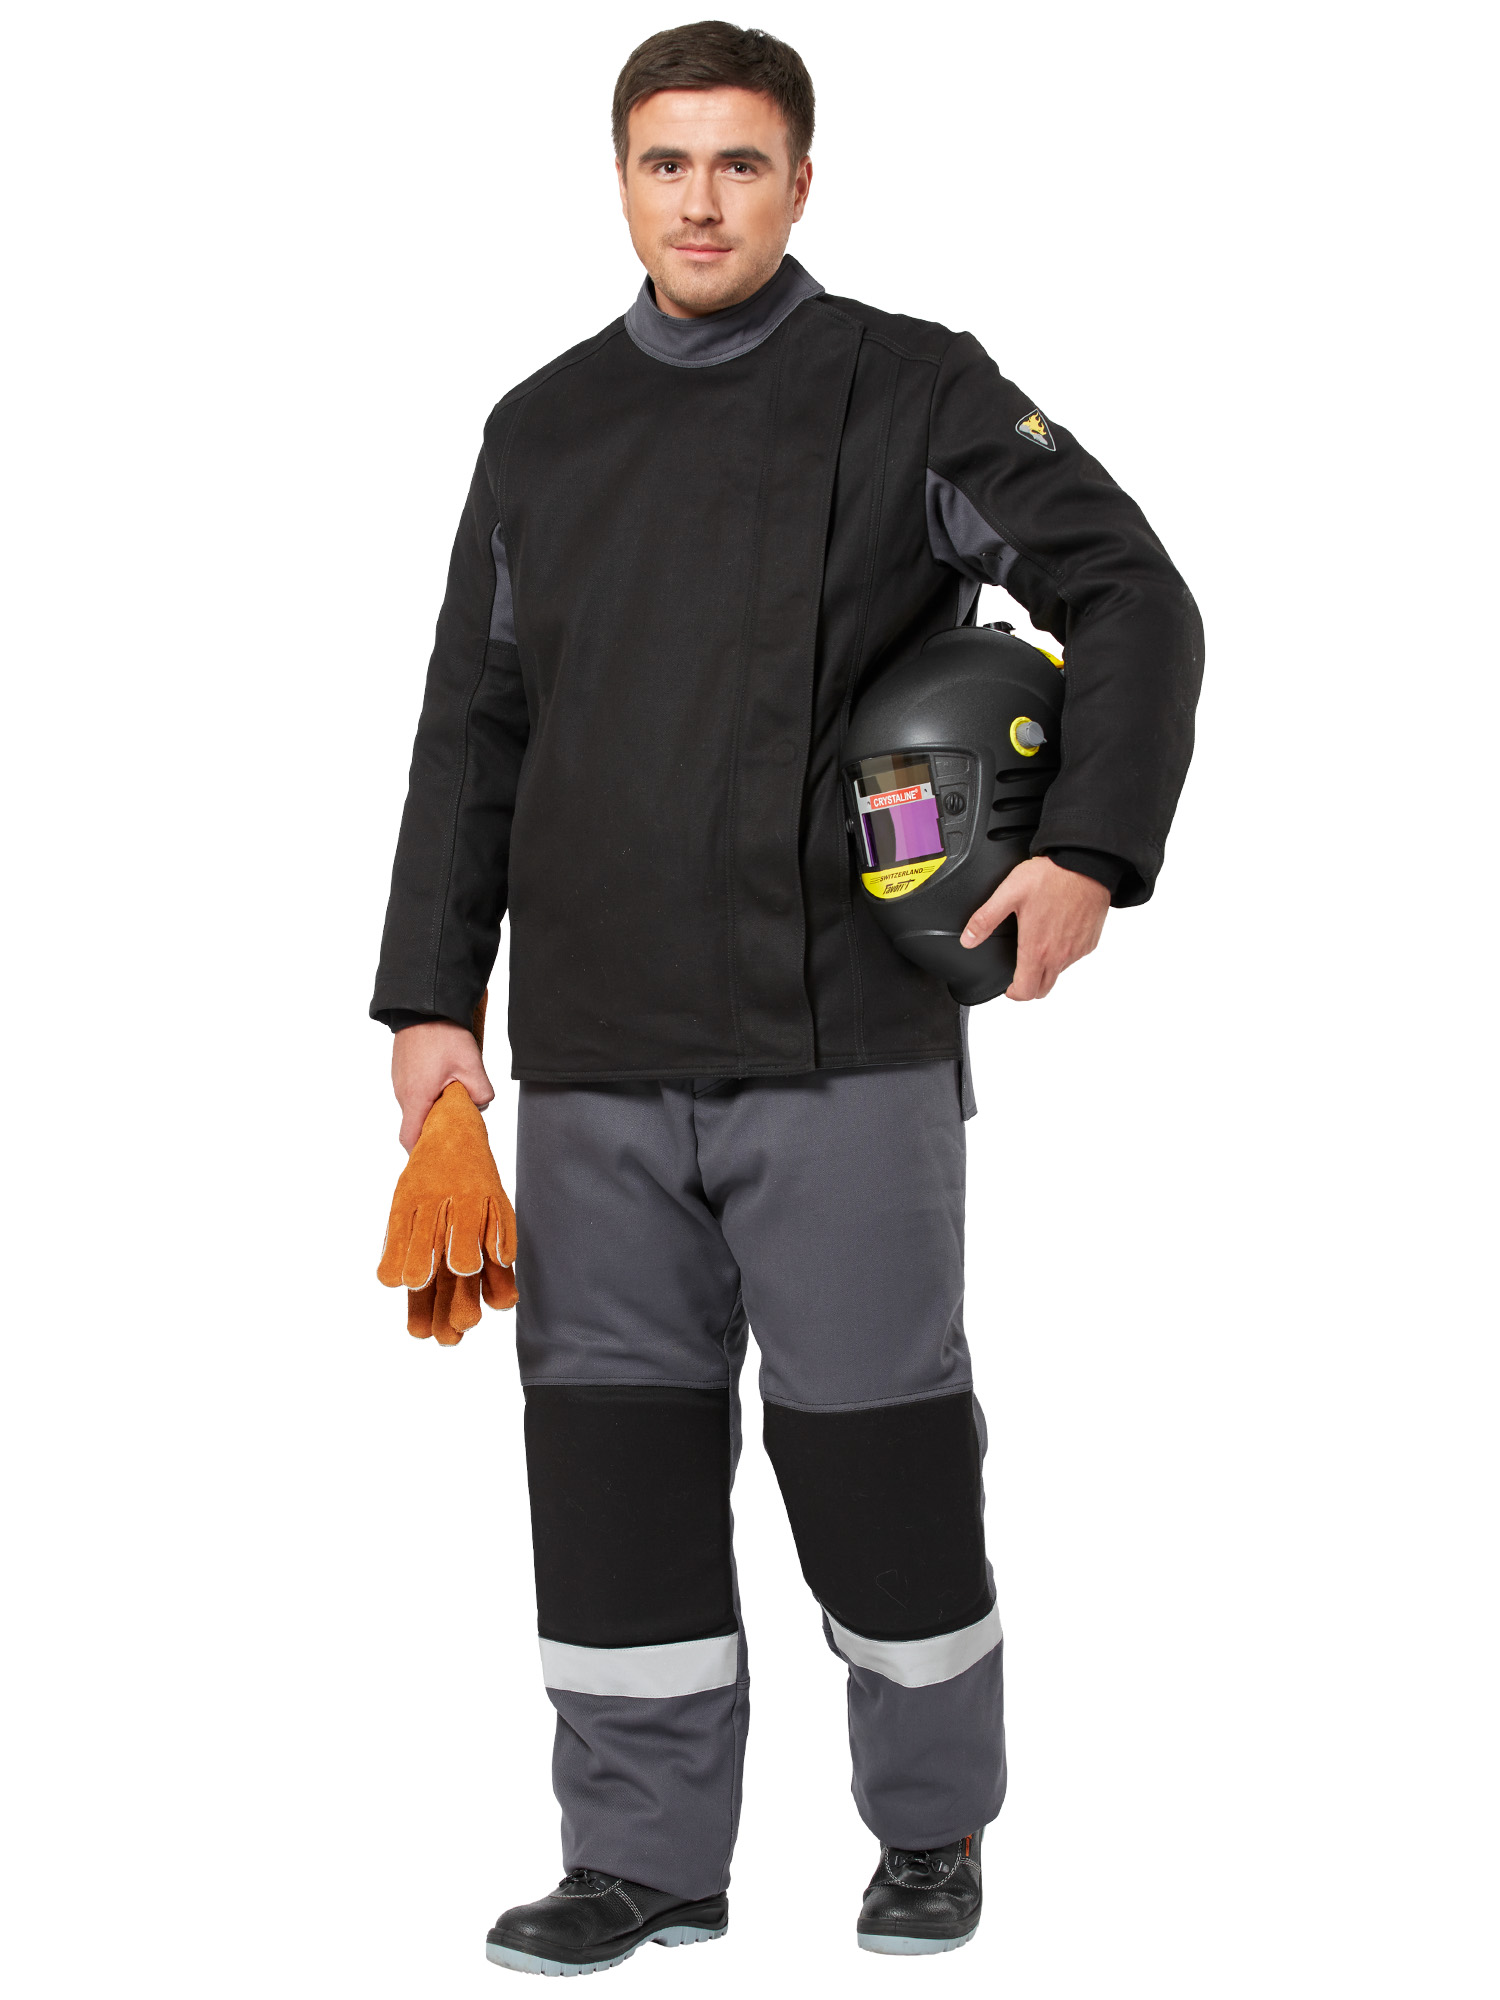 Зимний костюм сварщика "БОЛИД" мужской (куртка и брюки), цвет: черно-серый